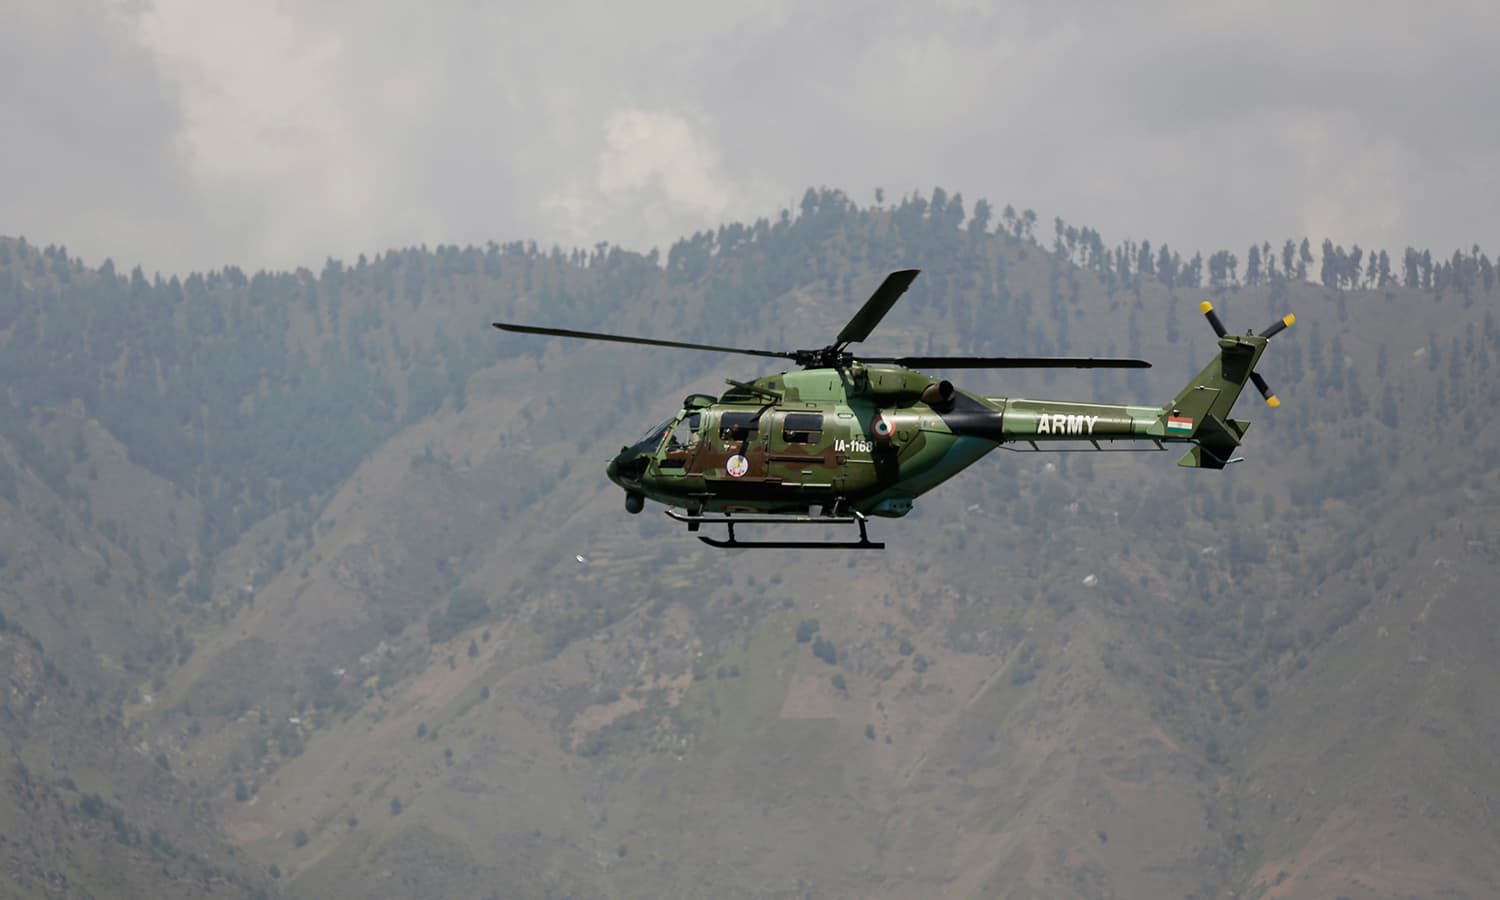 Ури нападение на базу. Пакистан армия вертолёт. Вооруженные силы бутана. Военные войска бутана. Бутан вооружение.